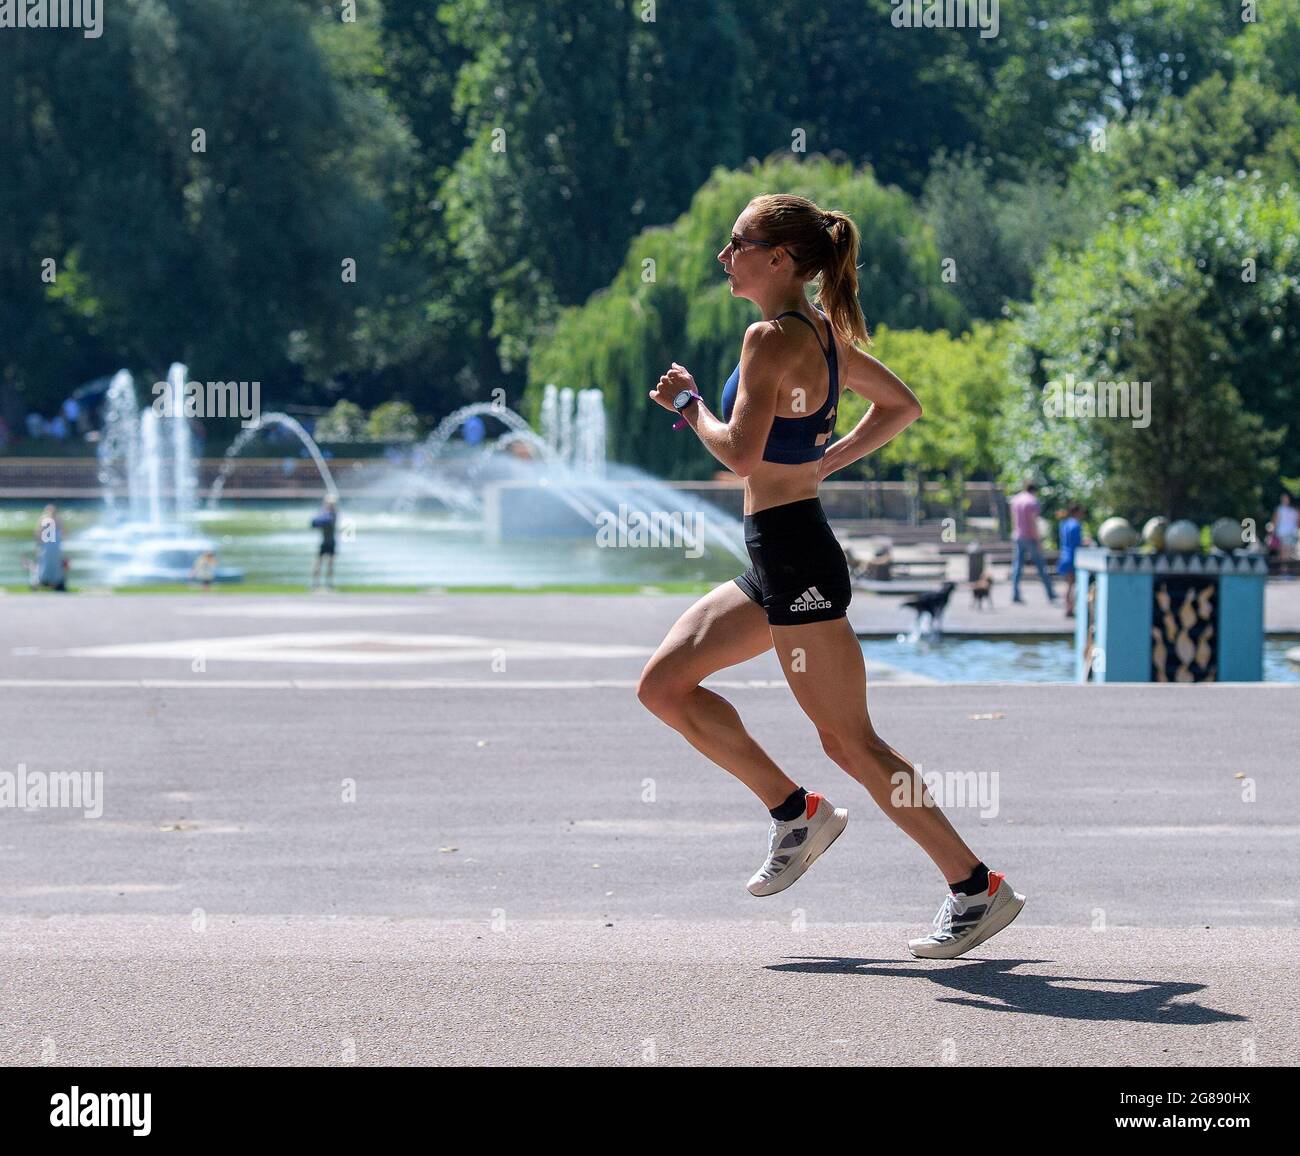 Battersea Park, Großbritannien. 18. Juli 2021. Stephanie Davis Team GB Olympic Marathon Runner trainiert in der drückenden Hitze im Battersea Park, um sich auf die Hitze bei den Olympischen Spielen 2020 in Tokio vorzubereiten. Quelle: Nigel Bramley/Alamy Live News Stockfoto